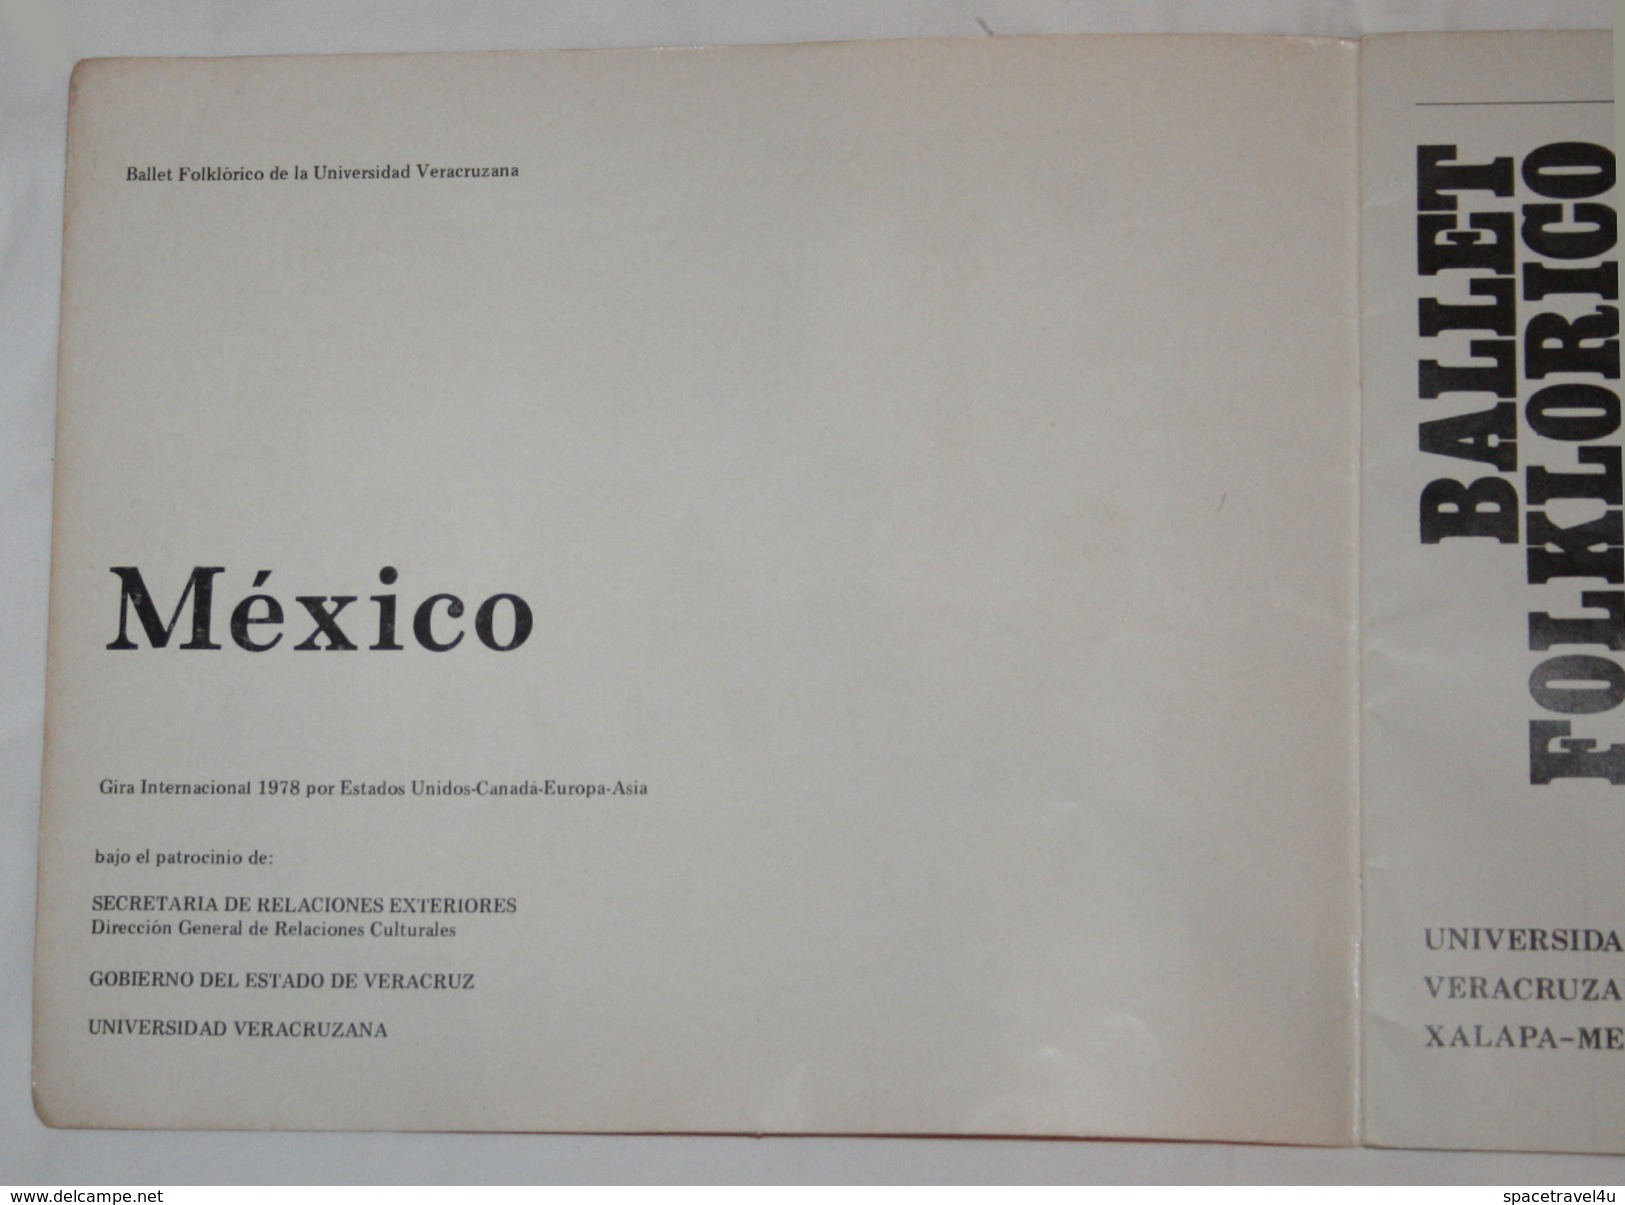 BALLET FOLKLORICO UNIVERSIDAD XALABA MEXICO 1978 - Vintage Ballet BOOKLET Original AUTOGRAPHS 25.1 X 21.2 Cm (VF-23-01) - Teatro